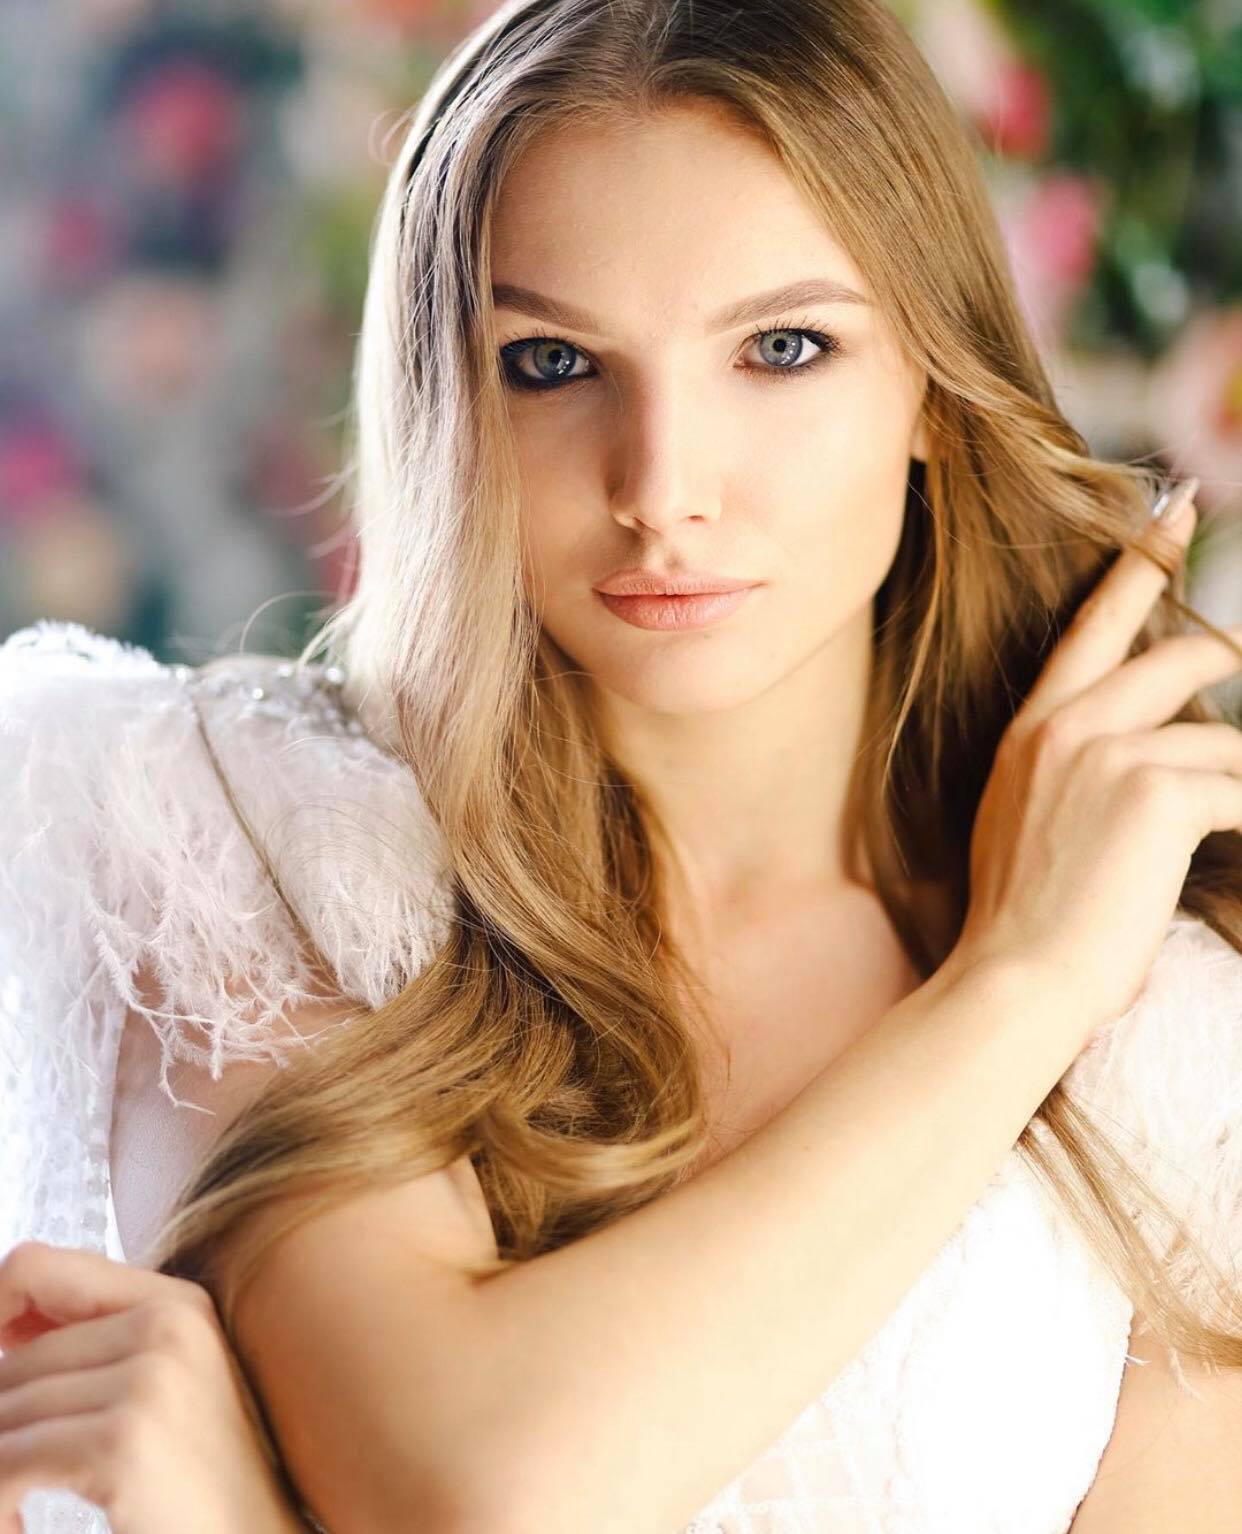 Anna Baksheeva, 18 tuổi, cao 1m77,&nbsp;đăng quang Hoa hậu Trái đất Nga 2019 vào ngày 26 tháng 6 năm 2019 tại cuộc thi Beauty of Russia 2019.&nbsp;